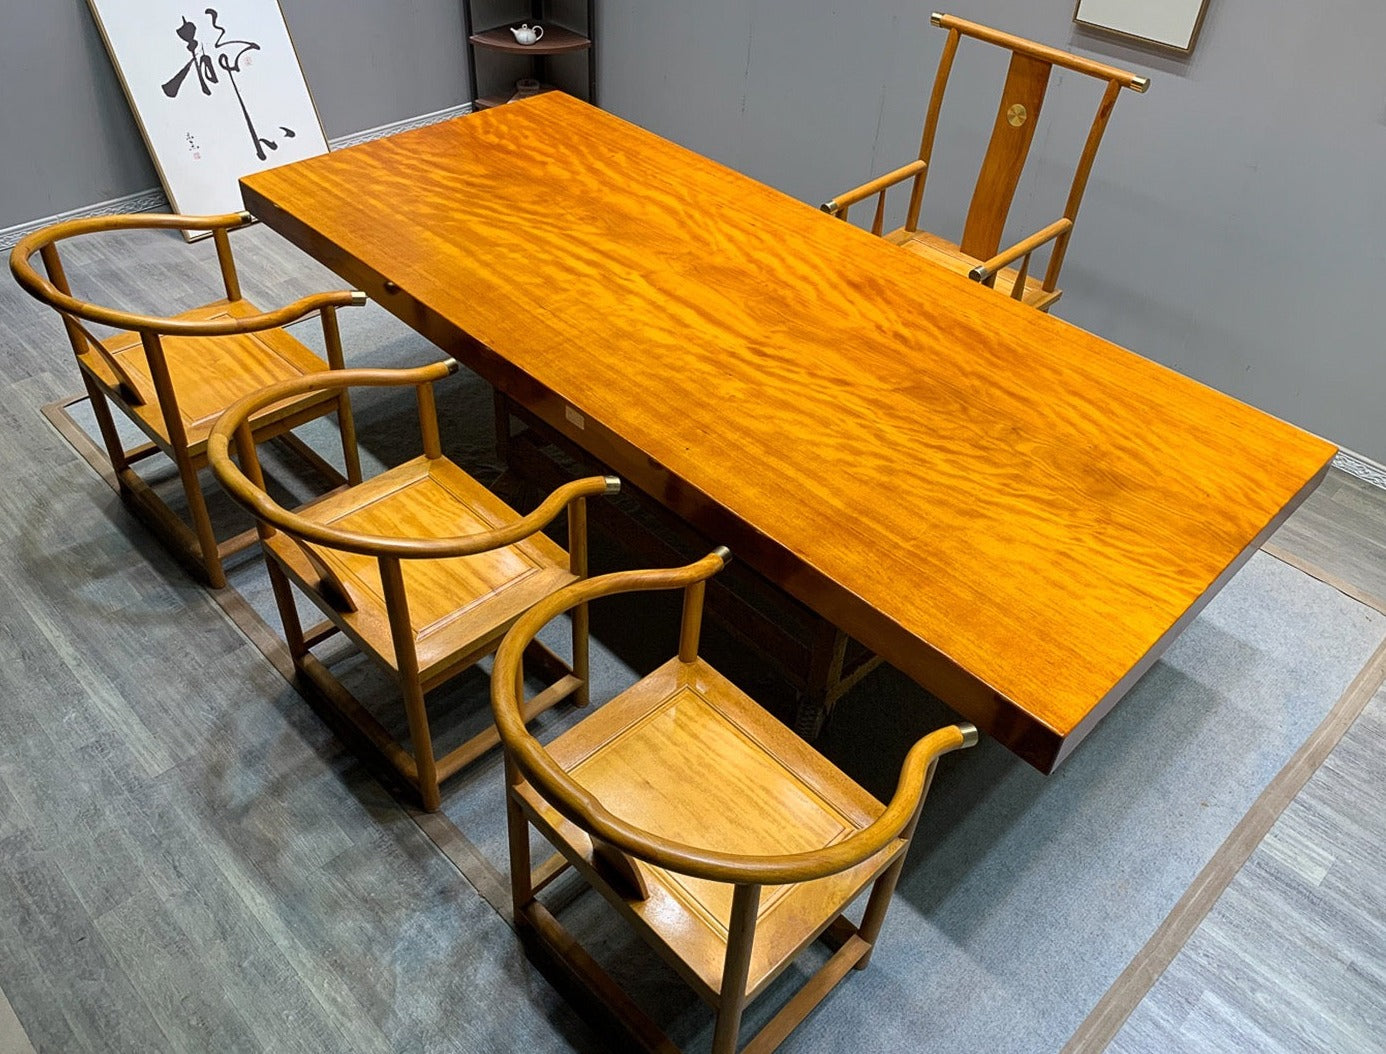 Japanese &  Jarrah slab table, Wooden slab kitchen table